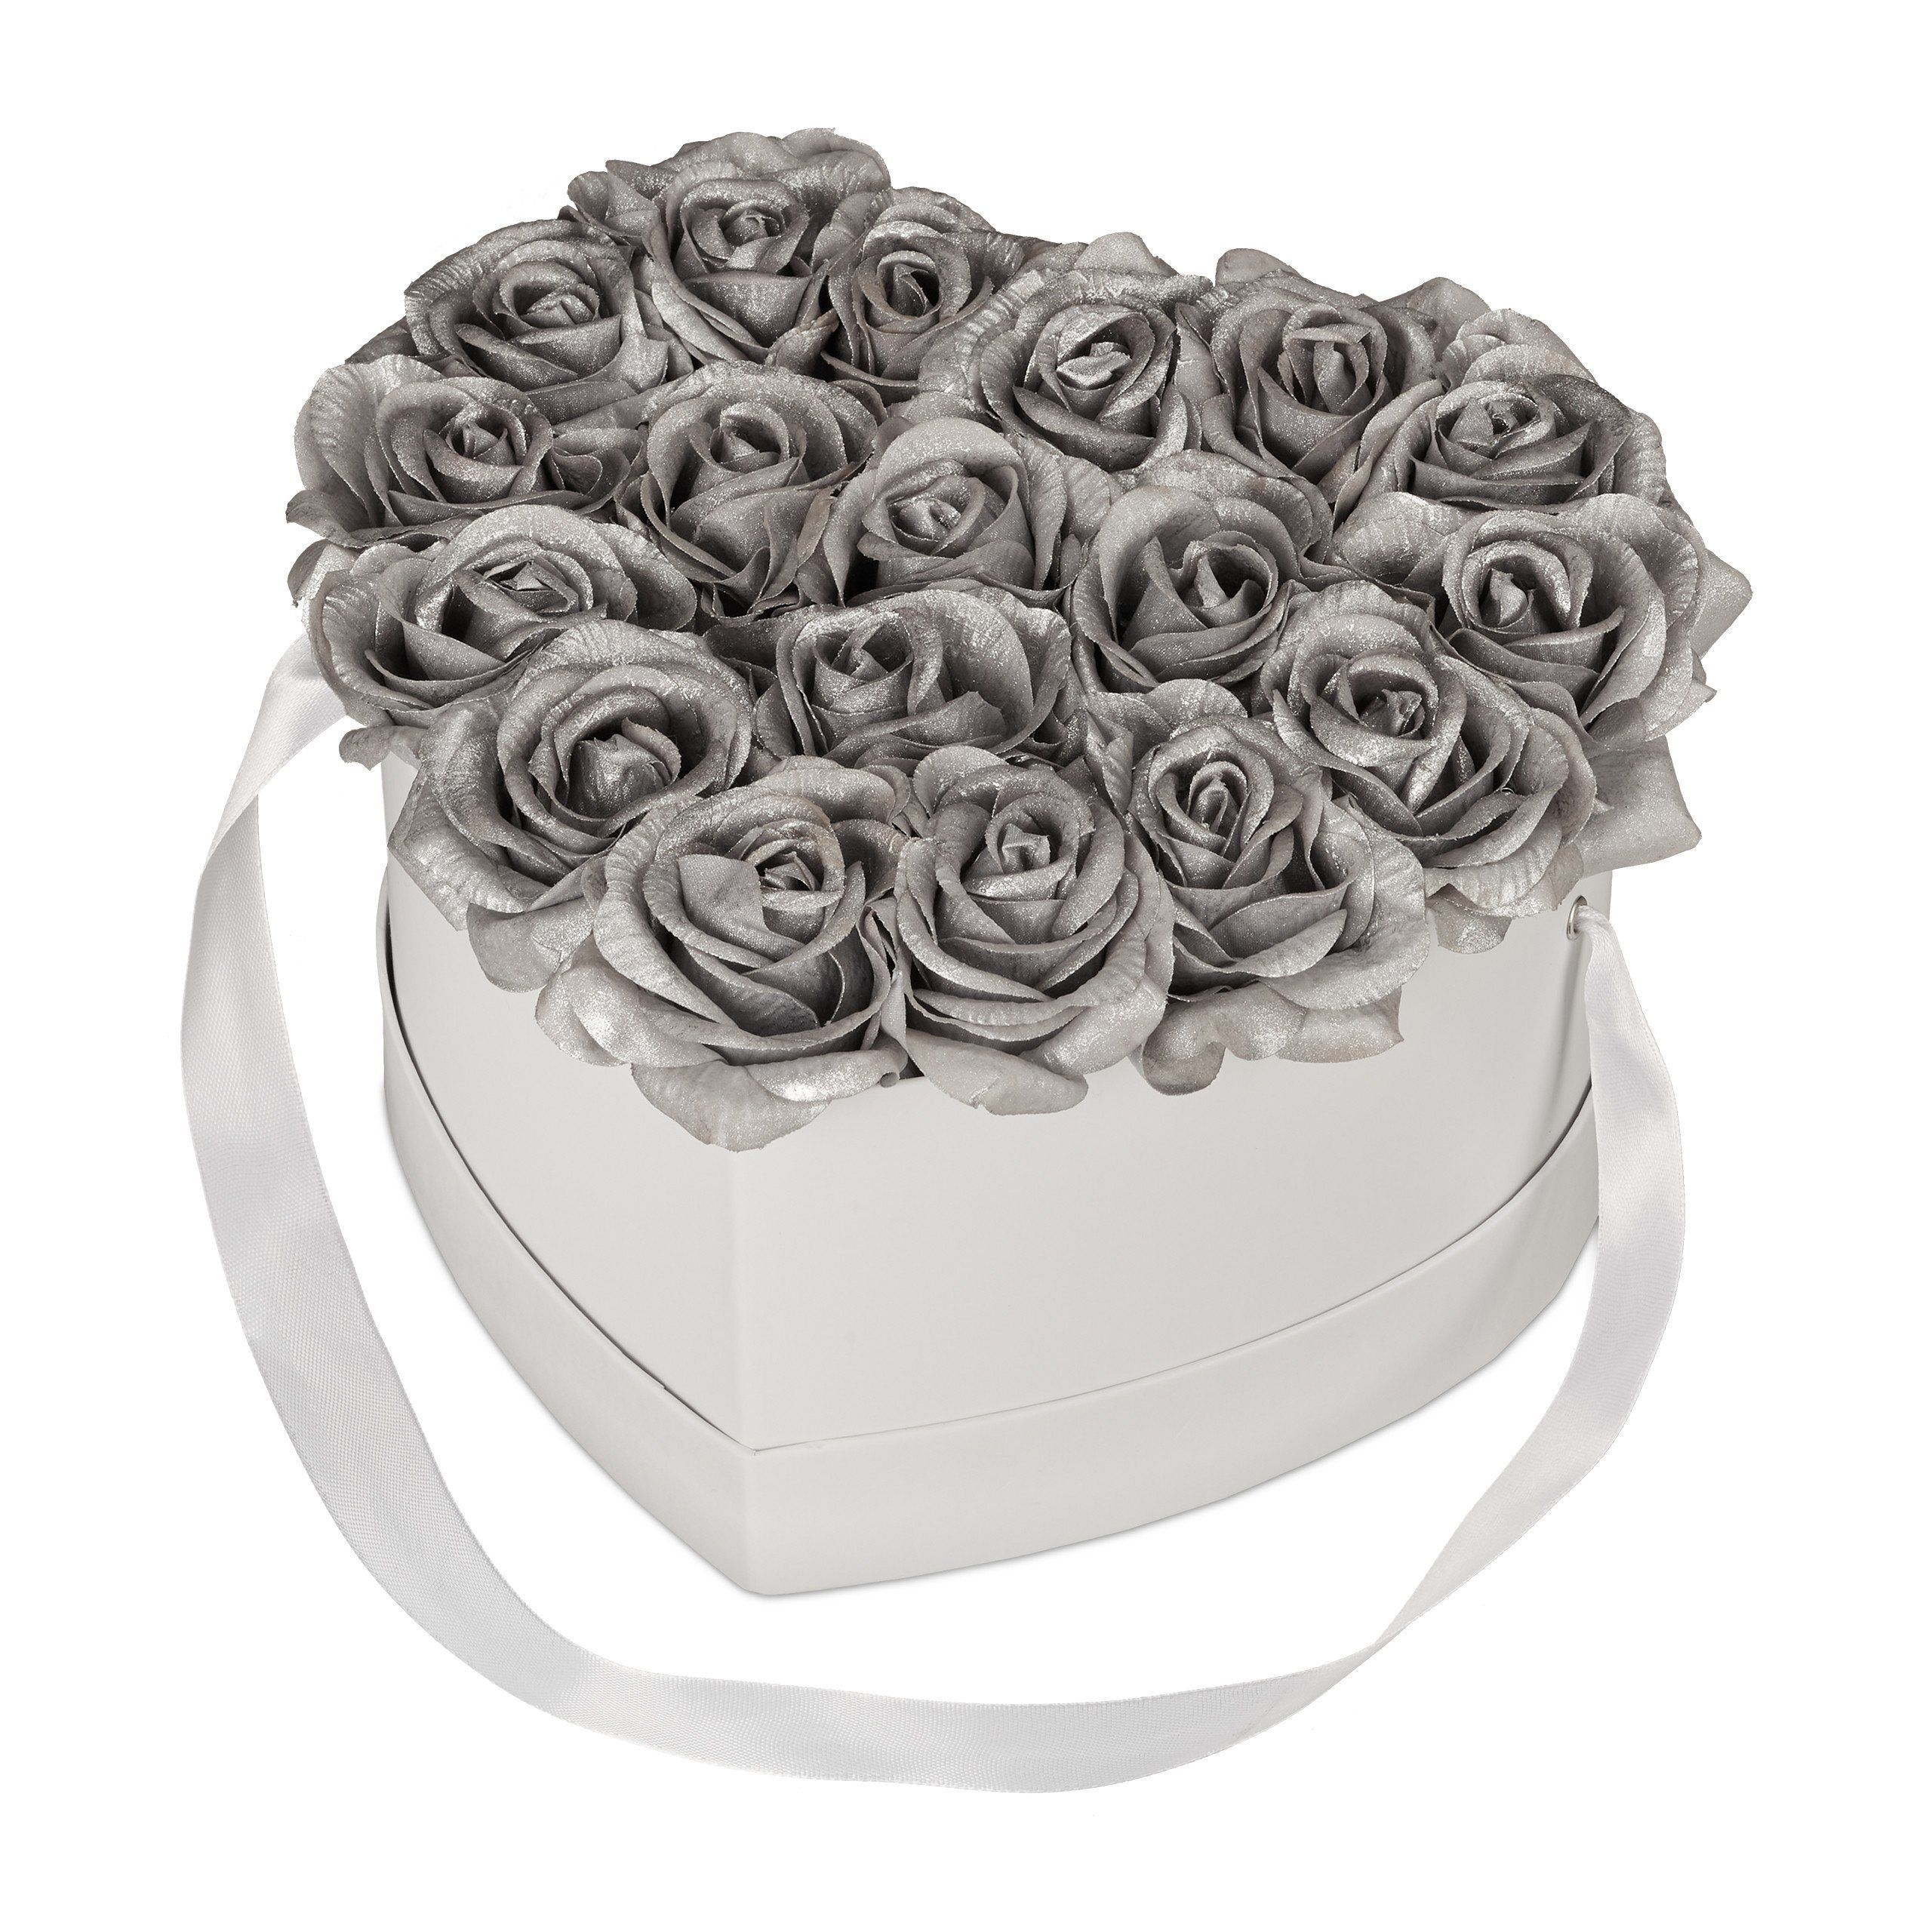 Gestecke Weiße Rosenbox mit 18 silbernen Rosen, relaxdays, Höhe 13 cm